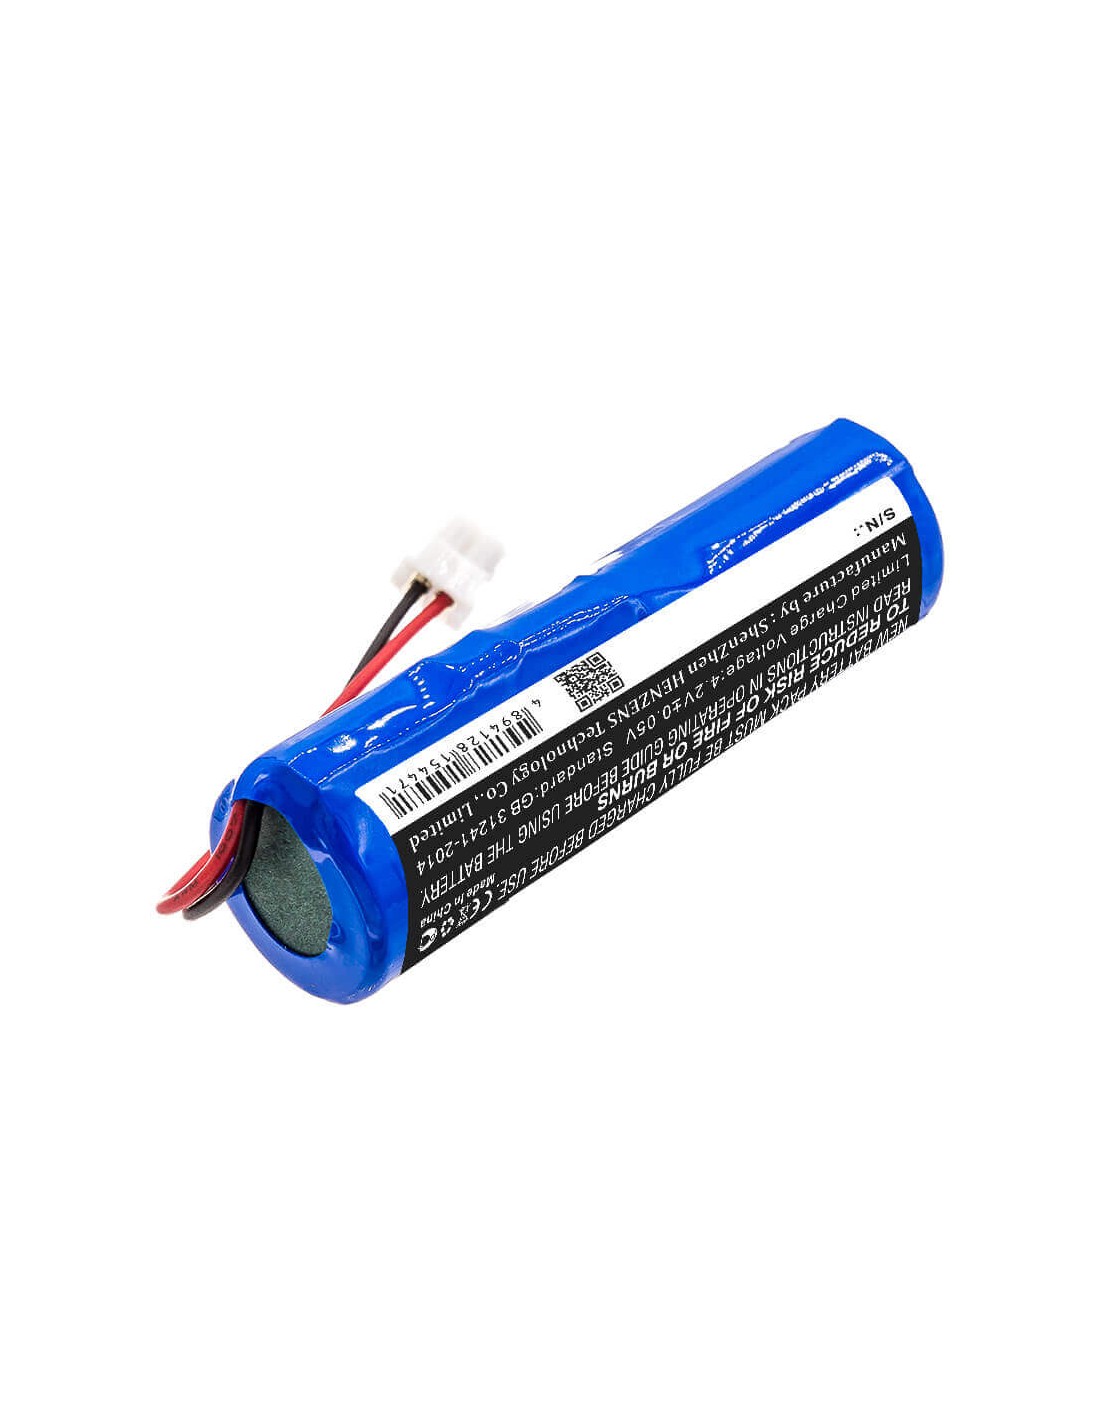 Battery for Reichert, Epg-1446, Pt100 Tonometer 3.7V, 3400mAh - 12.58Wh